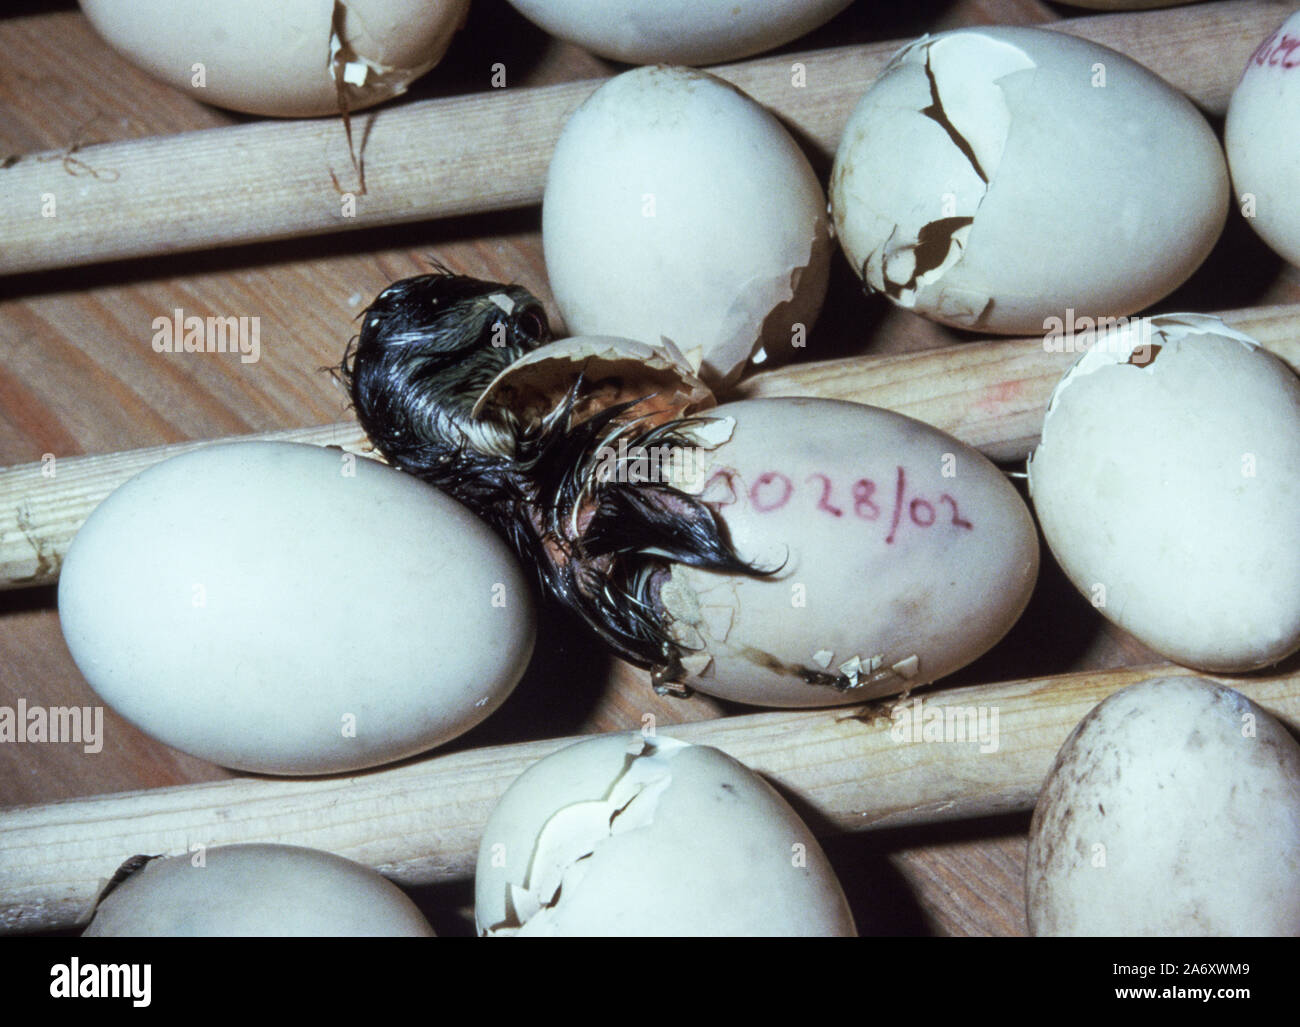 Carolina oder Nordamerikanischen Holz Ente' Aix sponsa'. Entlein, die sich aus dem Ei. Wildfowl & Wetlands Trust. Washington. Tyne and Wear. England. Stockfoto